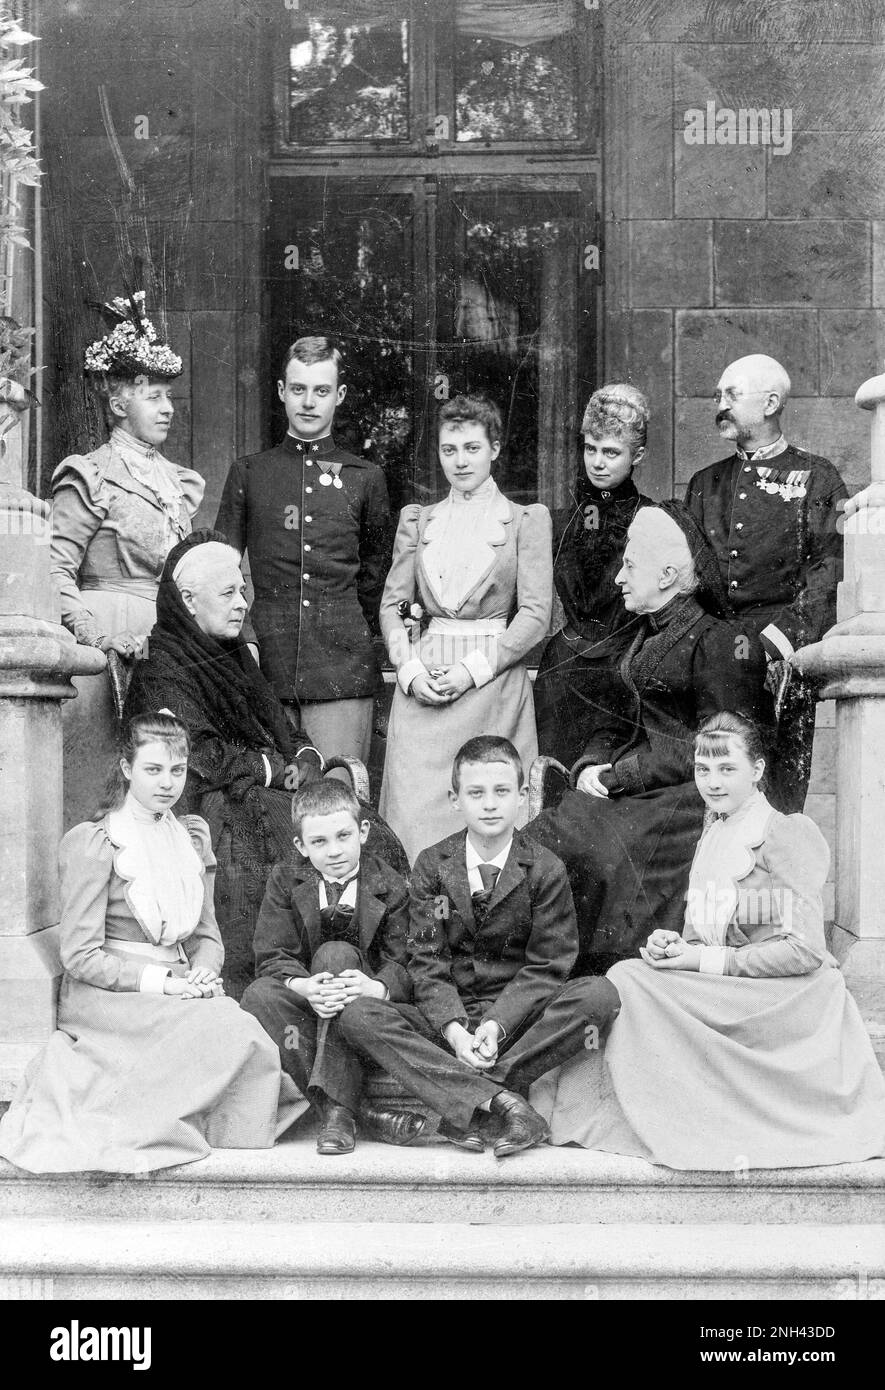 Ritratto di una famiglia, uomini, donne, bambini, soldati, Ufficiale, uniforme, bassa Sassonia, Germania, circa 1915 Foto Stock